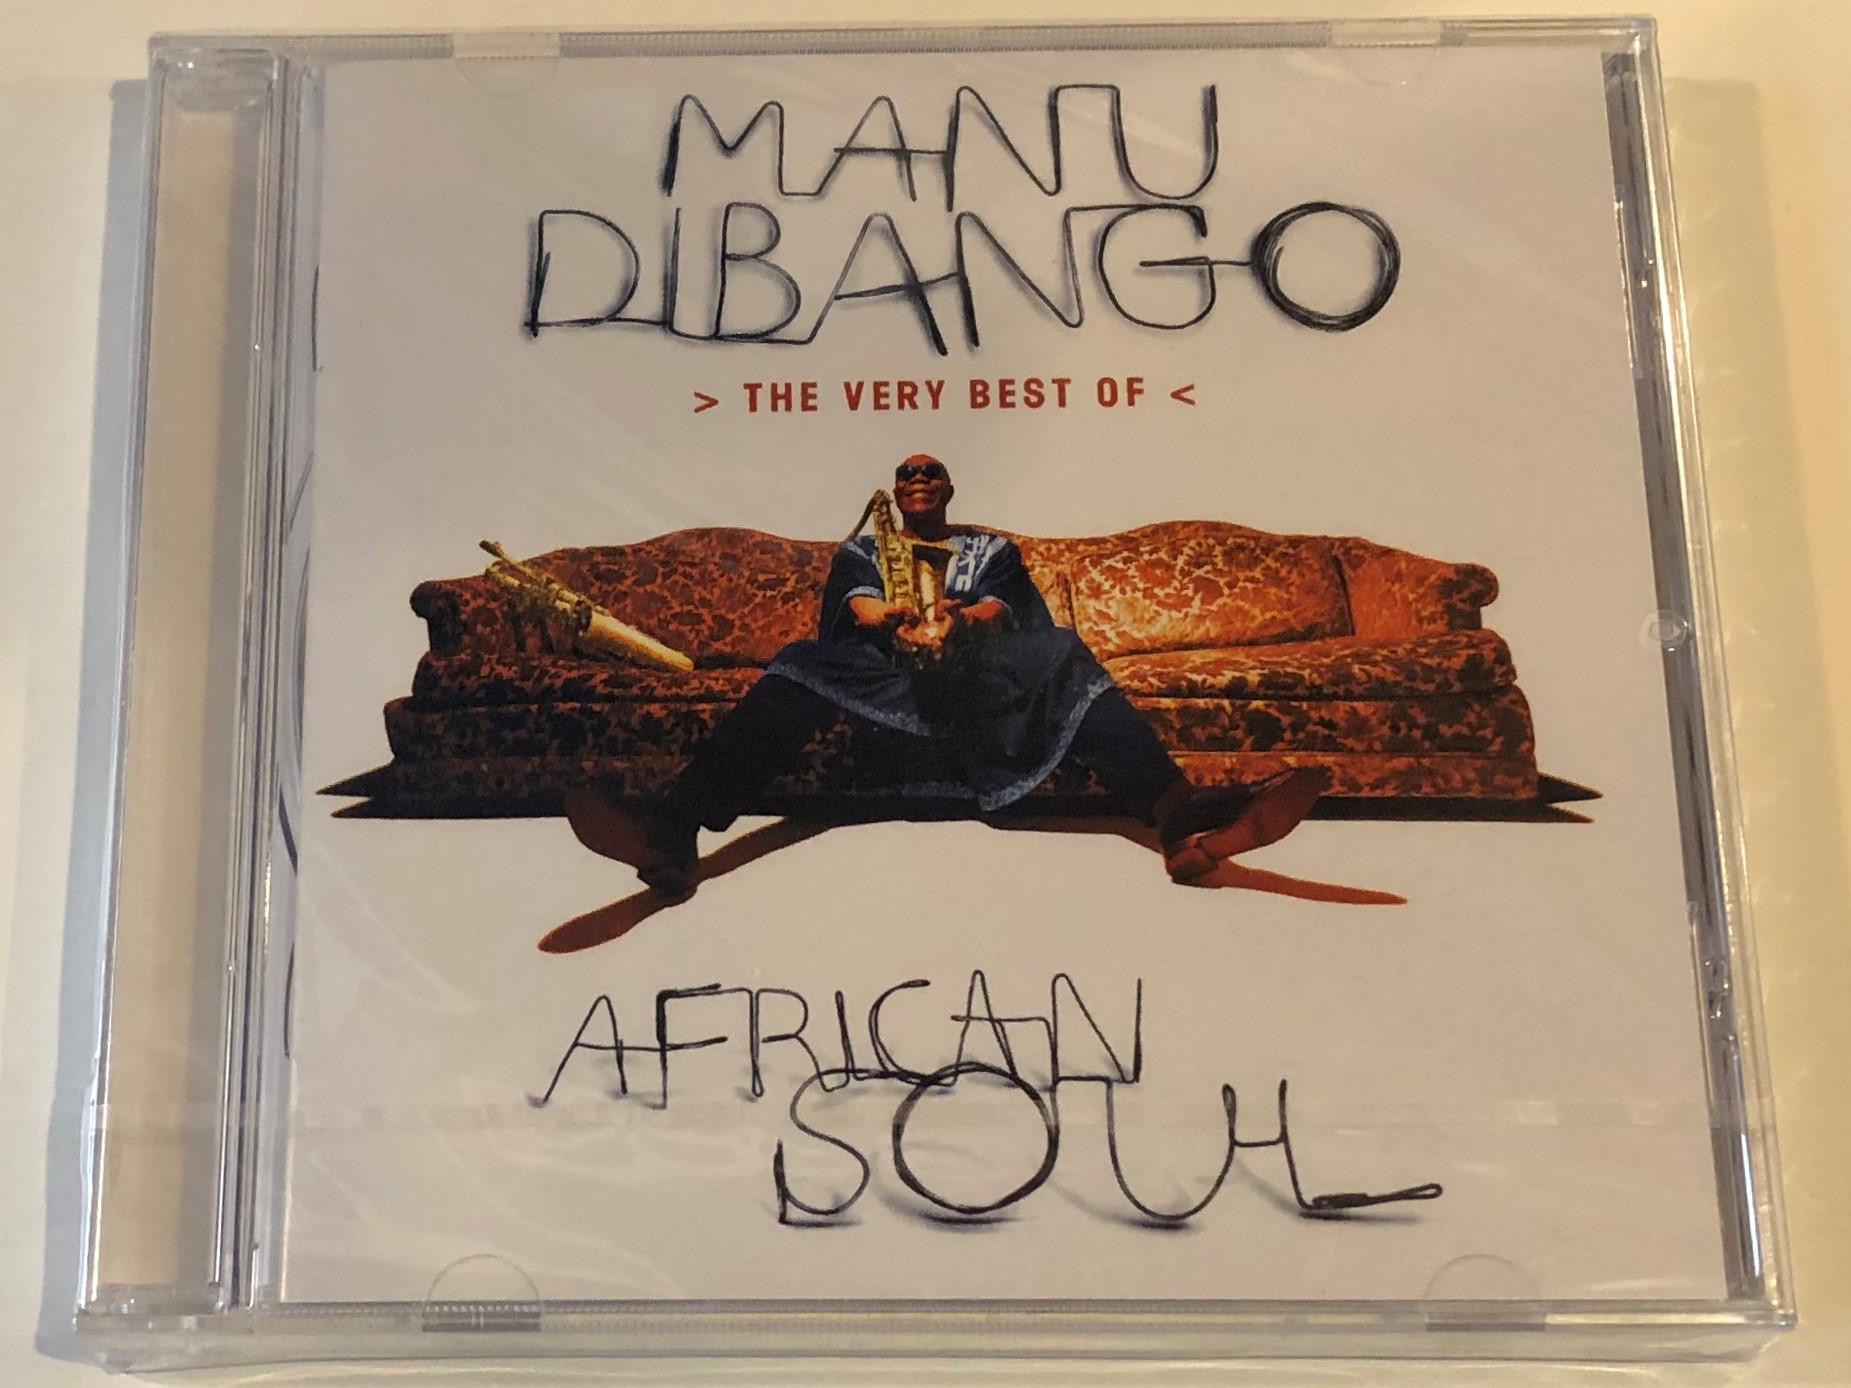 manu-dibango-african-soul-the-very-best-of-mercury-audio-cd-1997-534766-2-1-.jpg